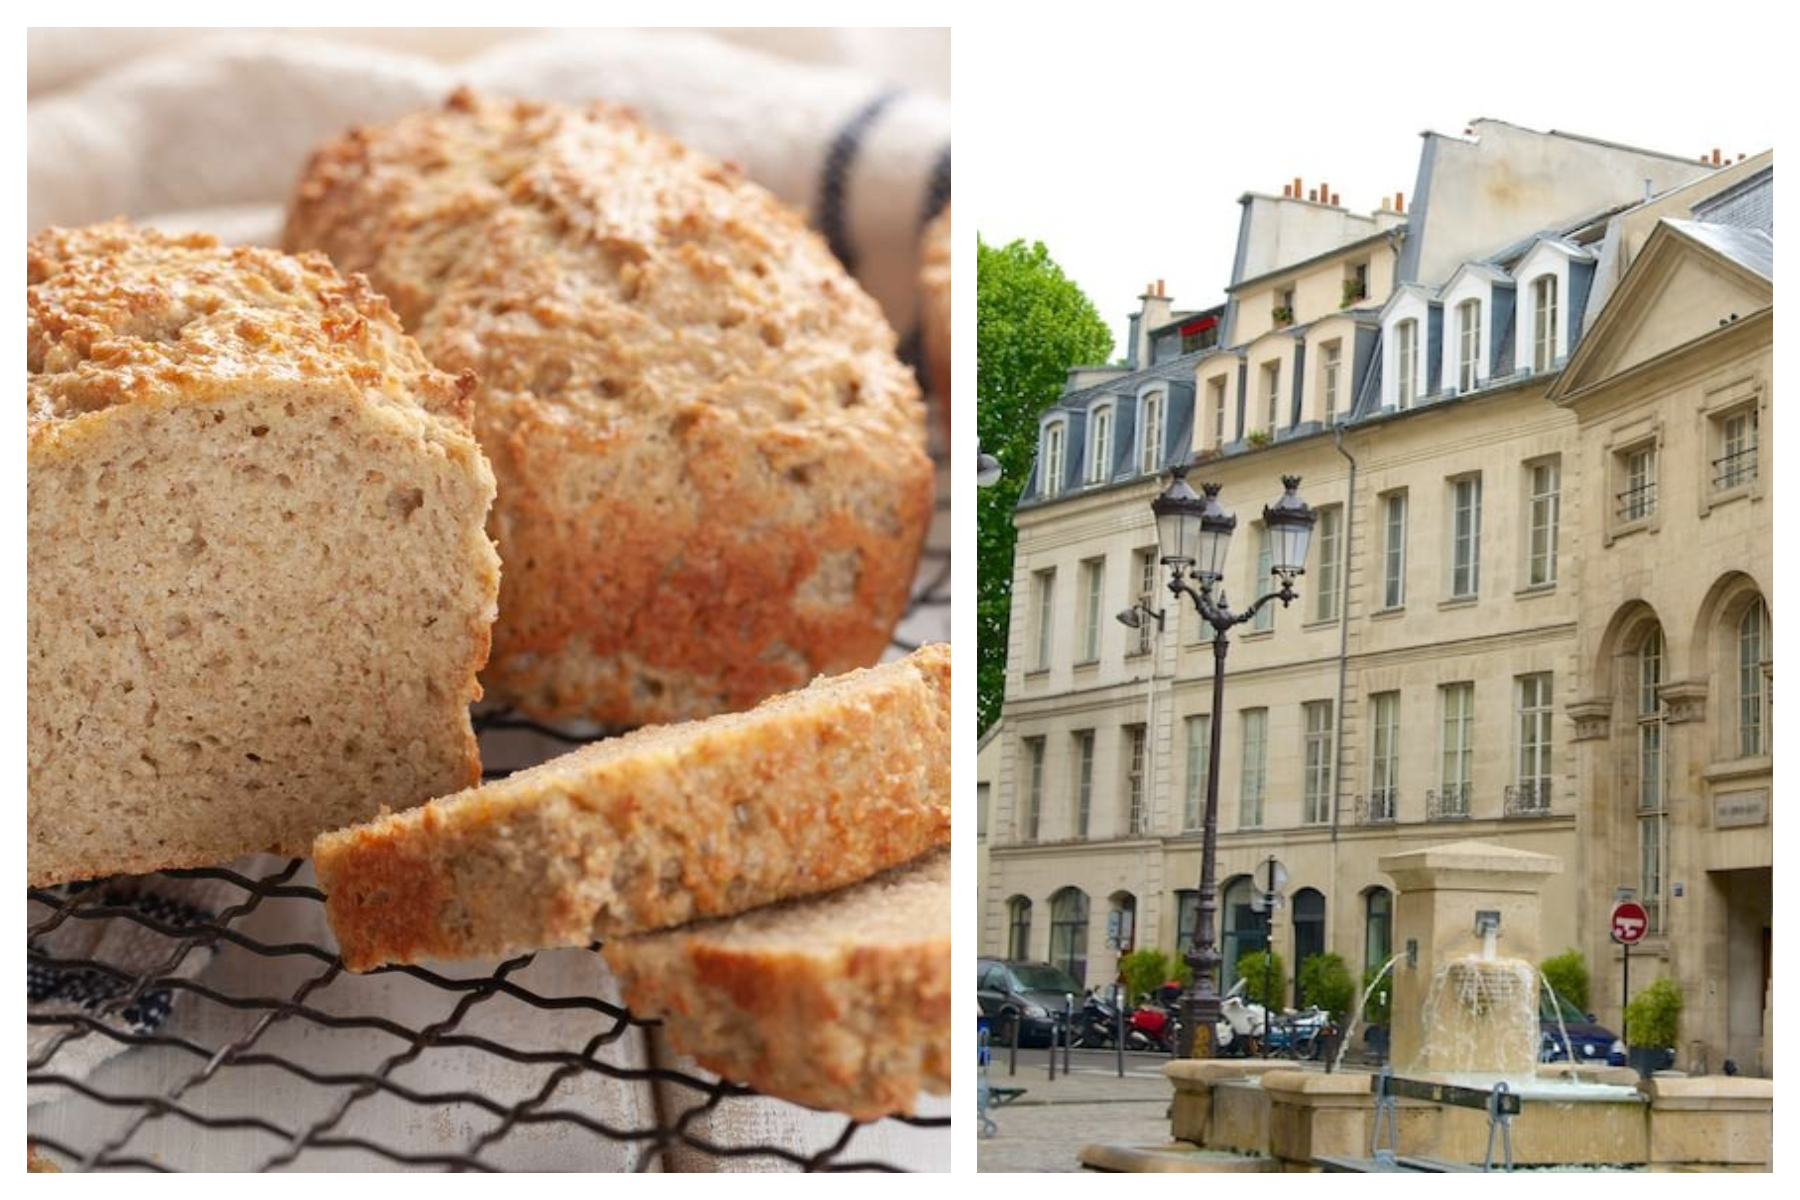 Unde găsiți cea mai bună pâine fără gluten în Paris 5?